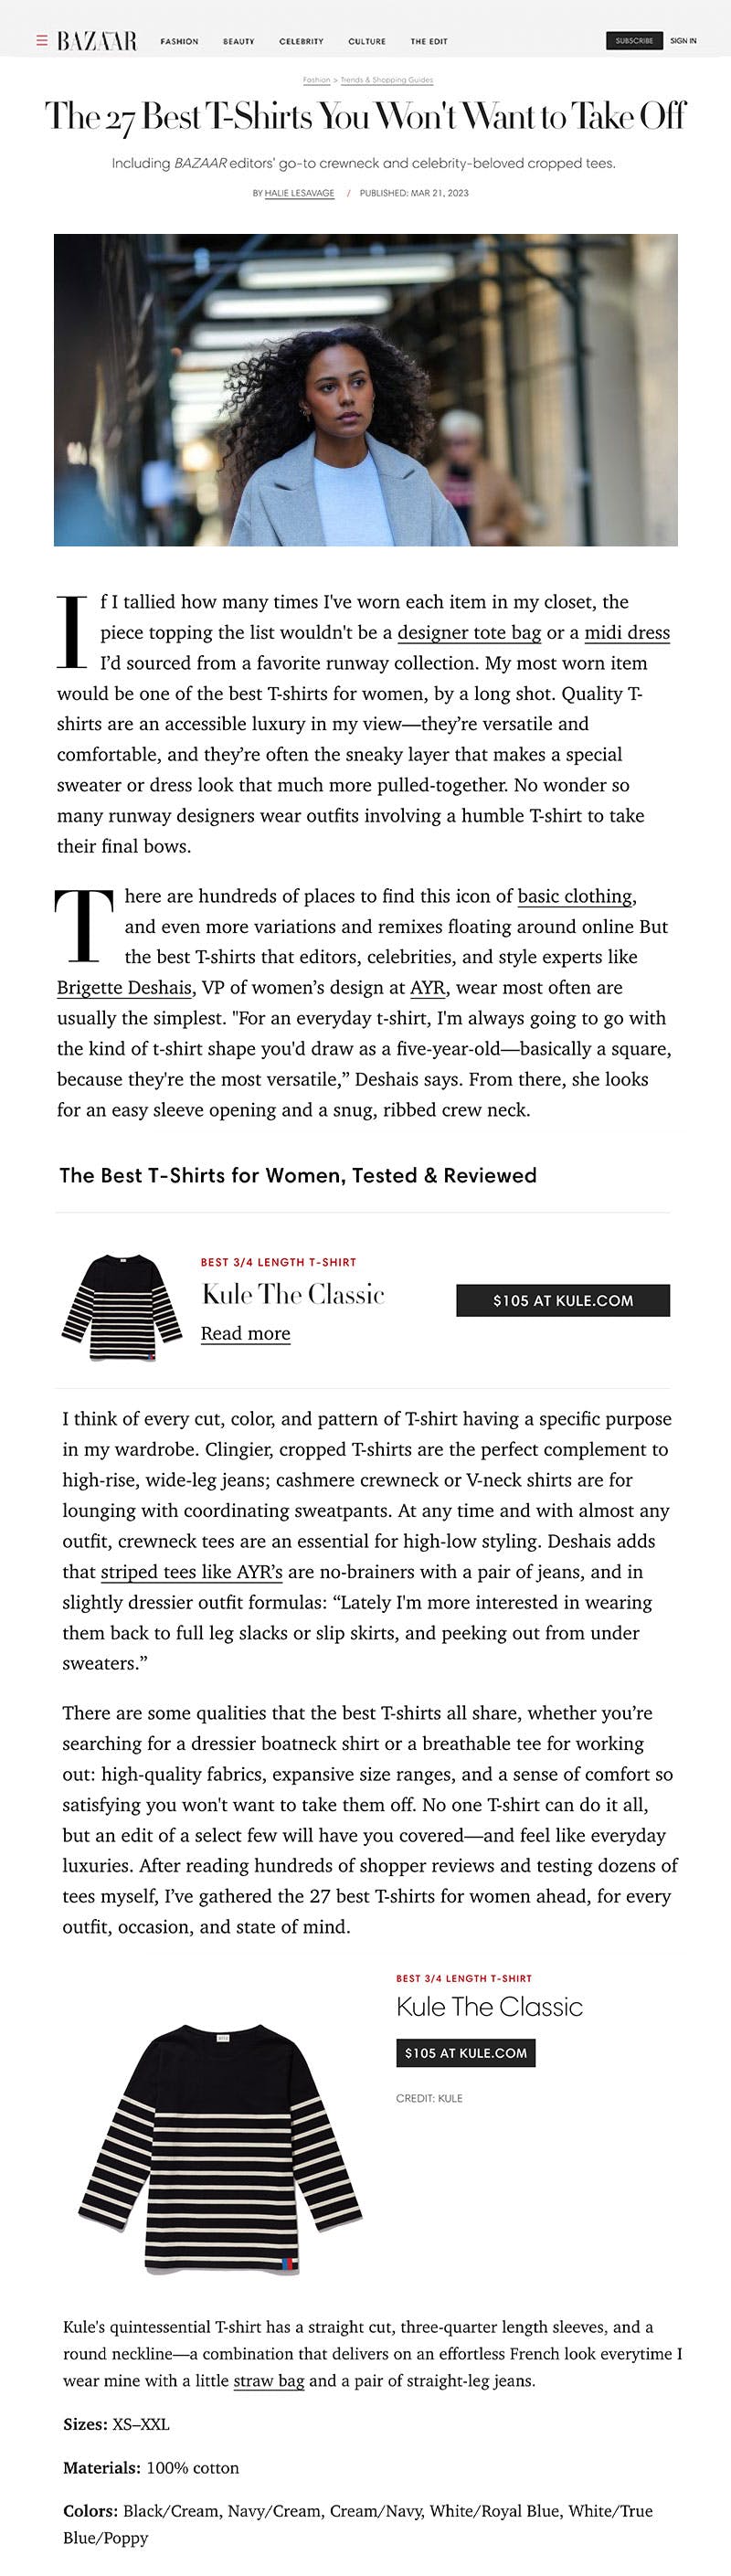 Harper's Bazaar featuring KULE Classic Tee as best 3/4 length sleeve tee